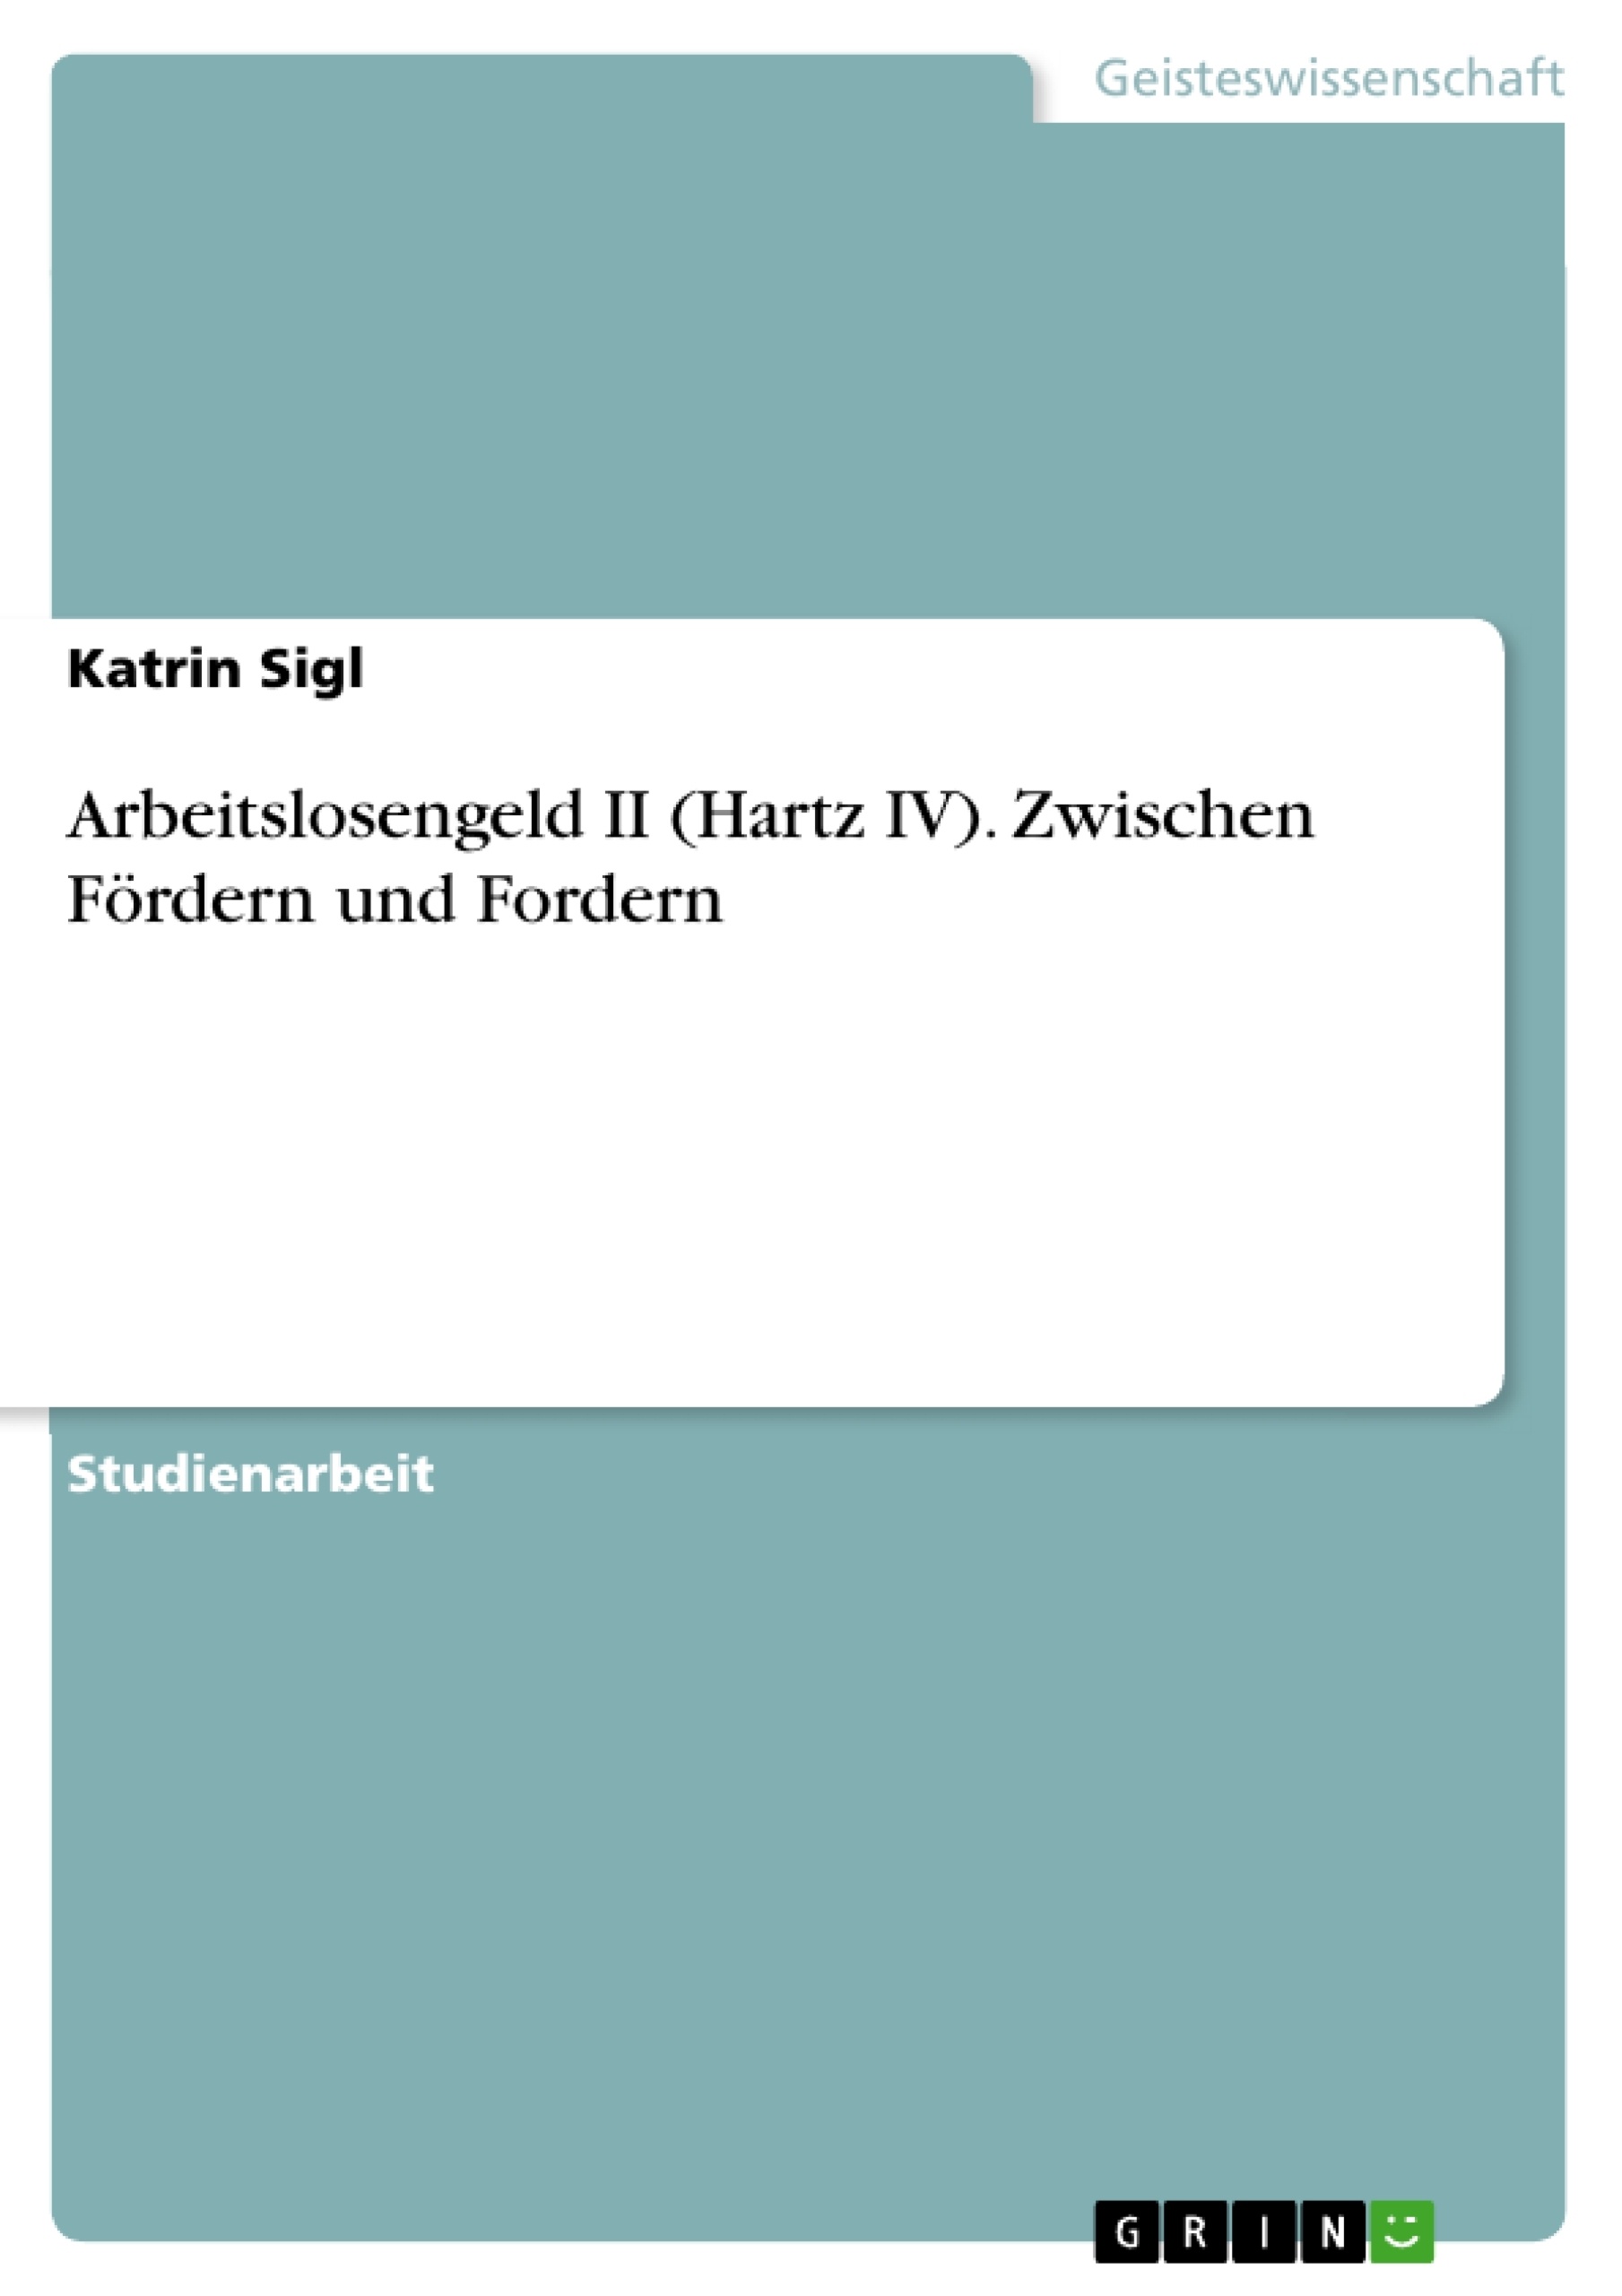 Title: Arbeitslosengeld II (Hartz IV). Zwischen Fördern und Fordern